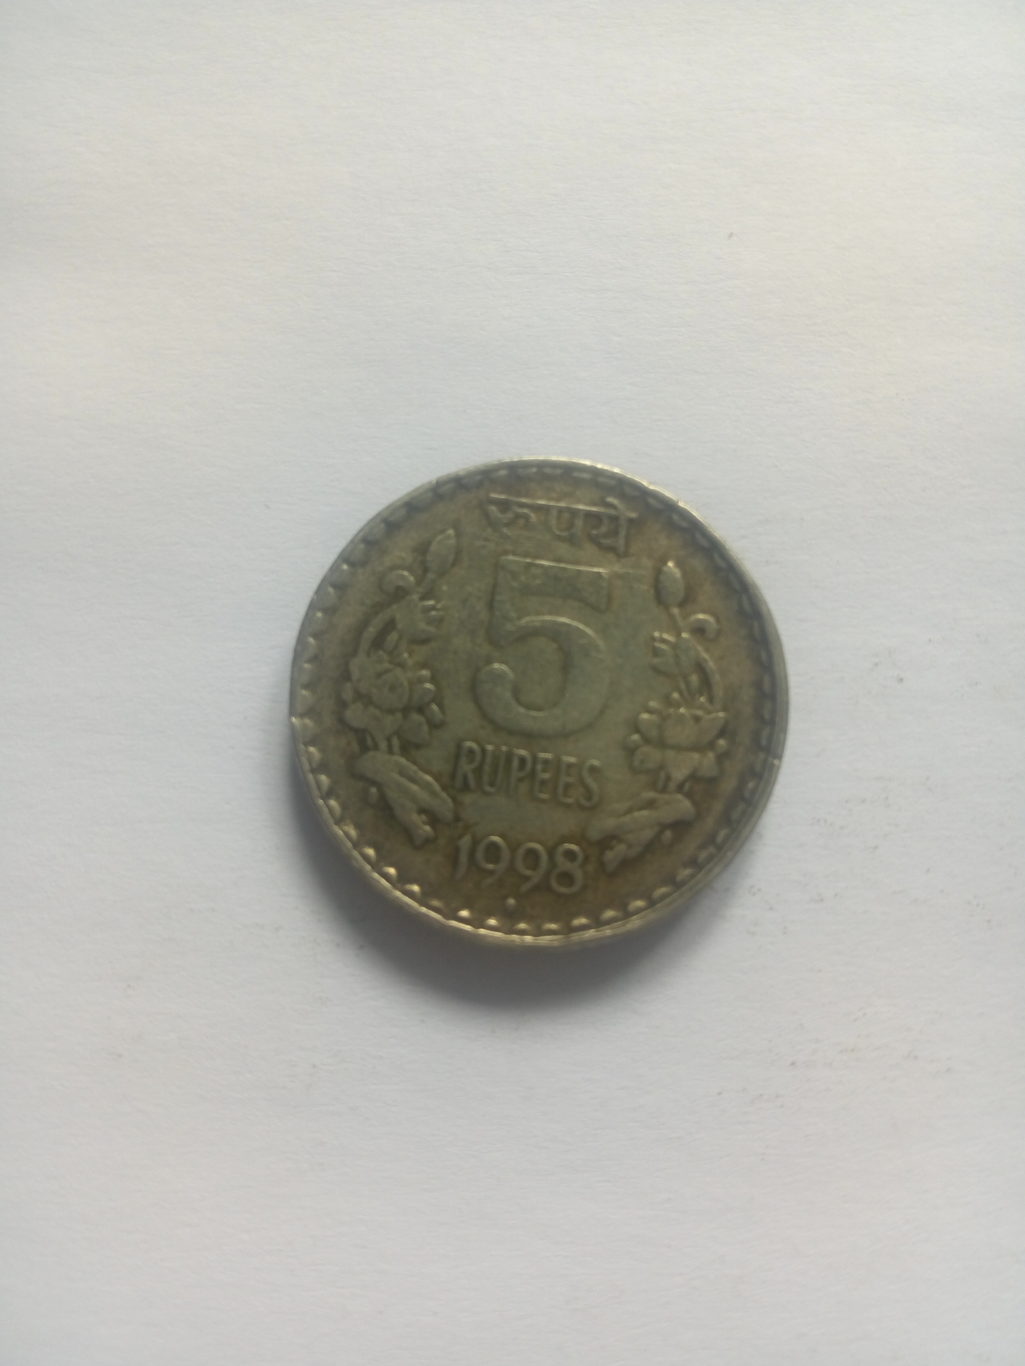 1998_5 rupee india